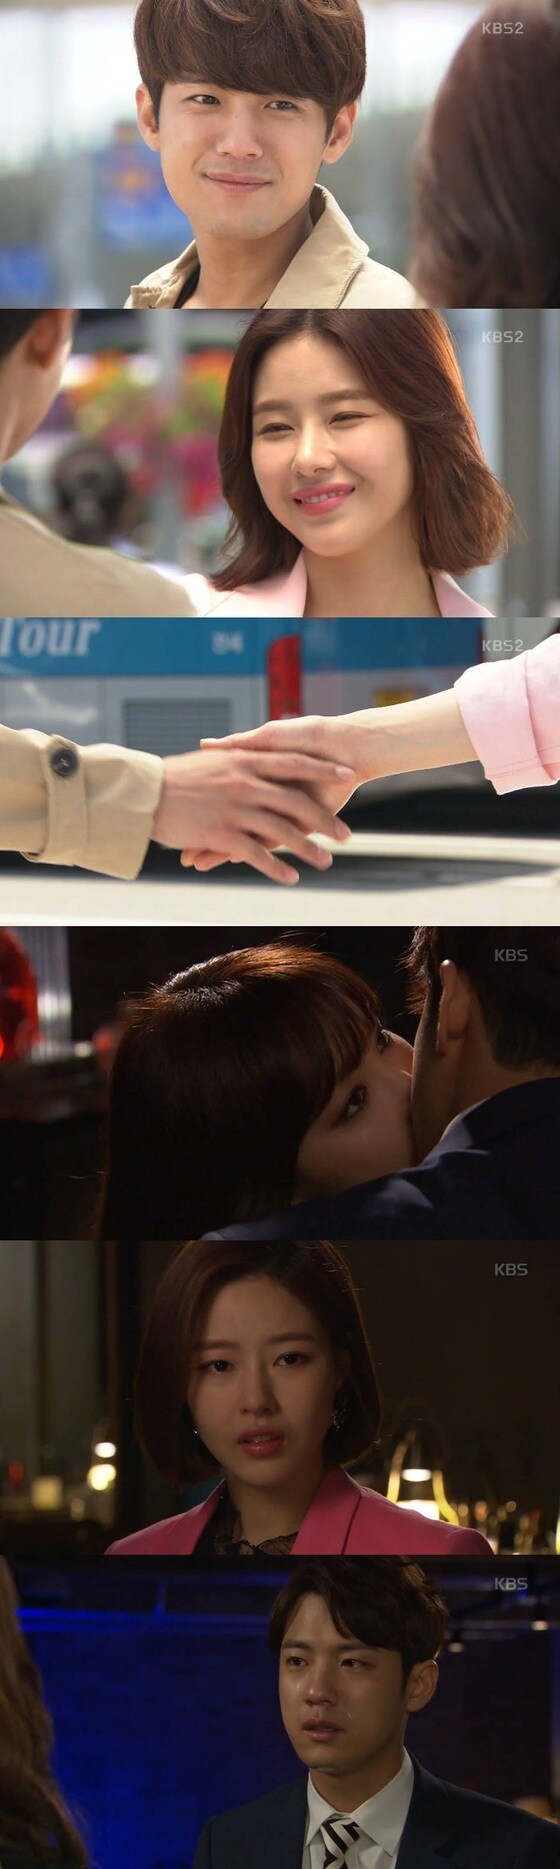 서준영이 극중 강태준으로 분해 열연을 펼쳤다. © News1star / KBS2 '천상의 약속' 캡처